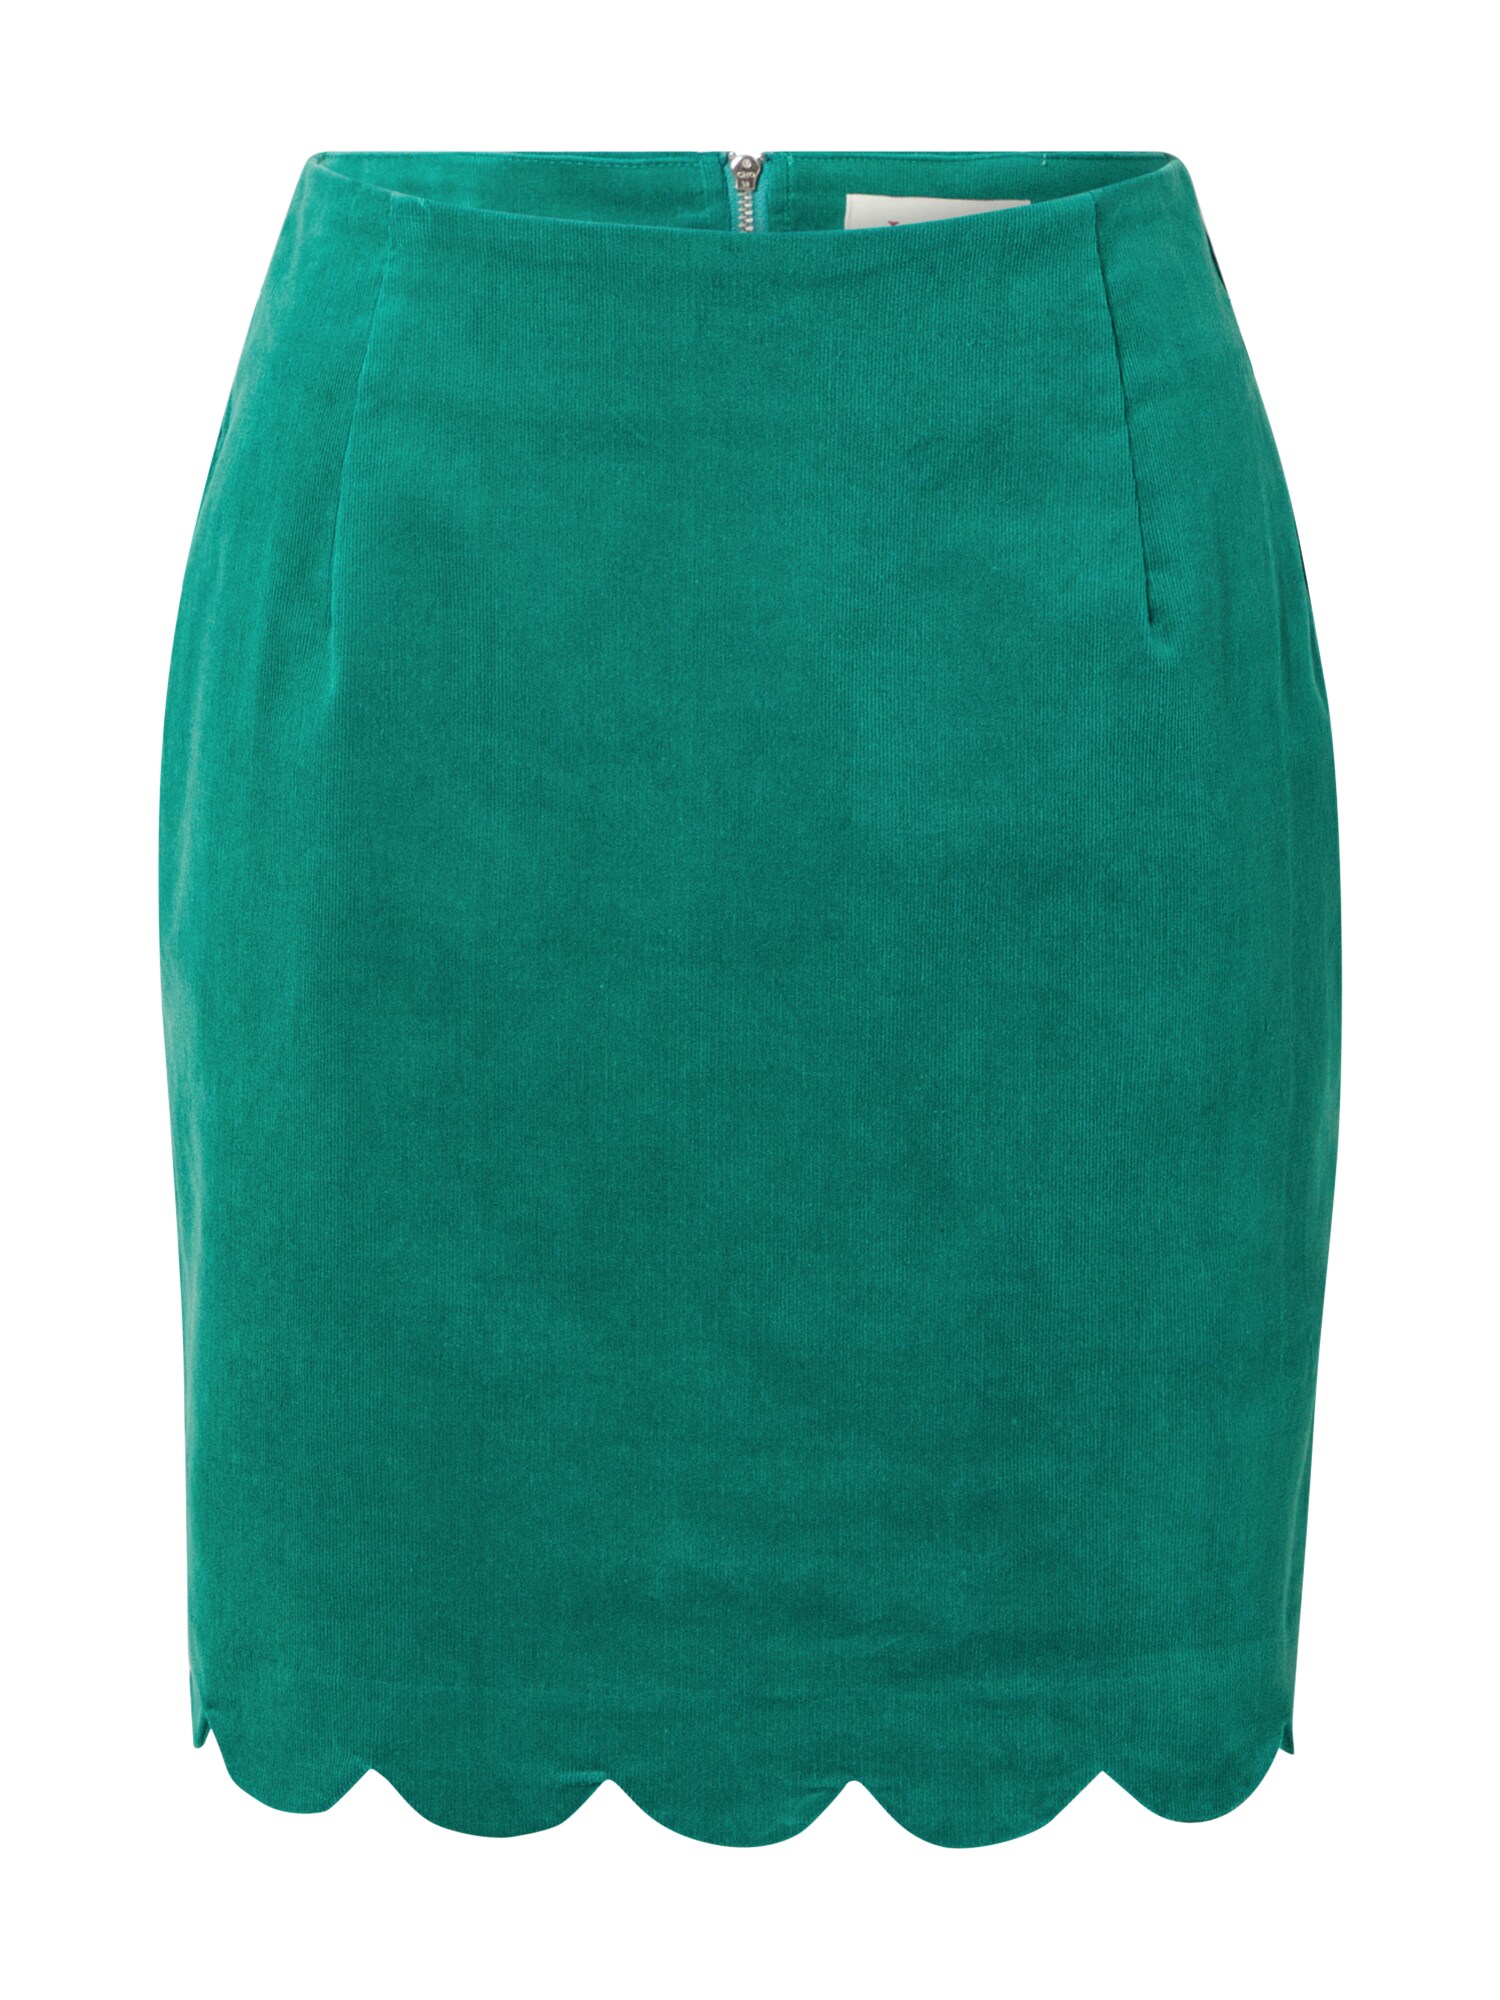 Louche Sijonas 'ALICJA' smaragdinė spalva